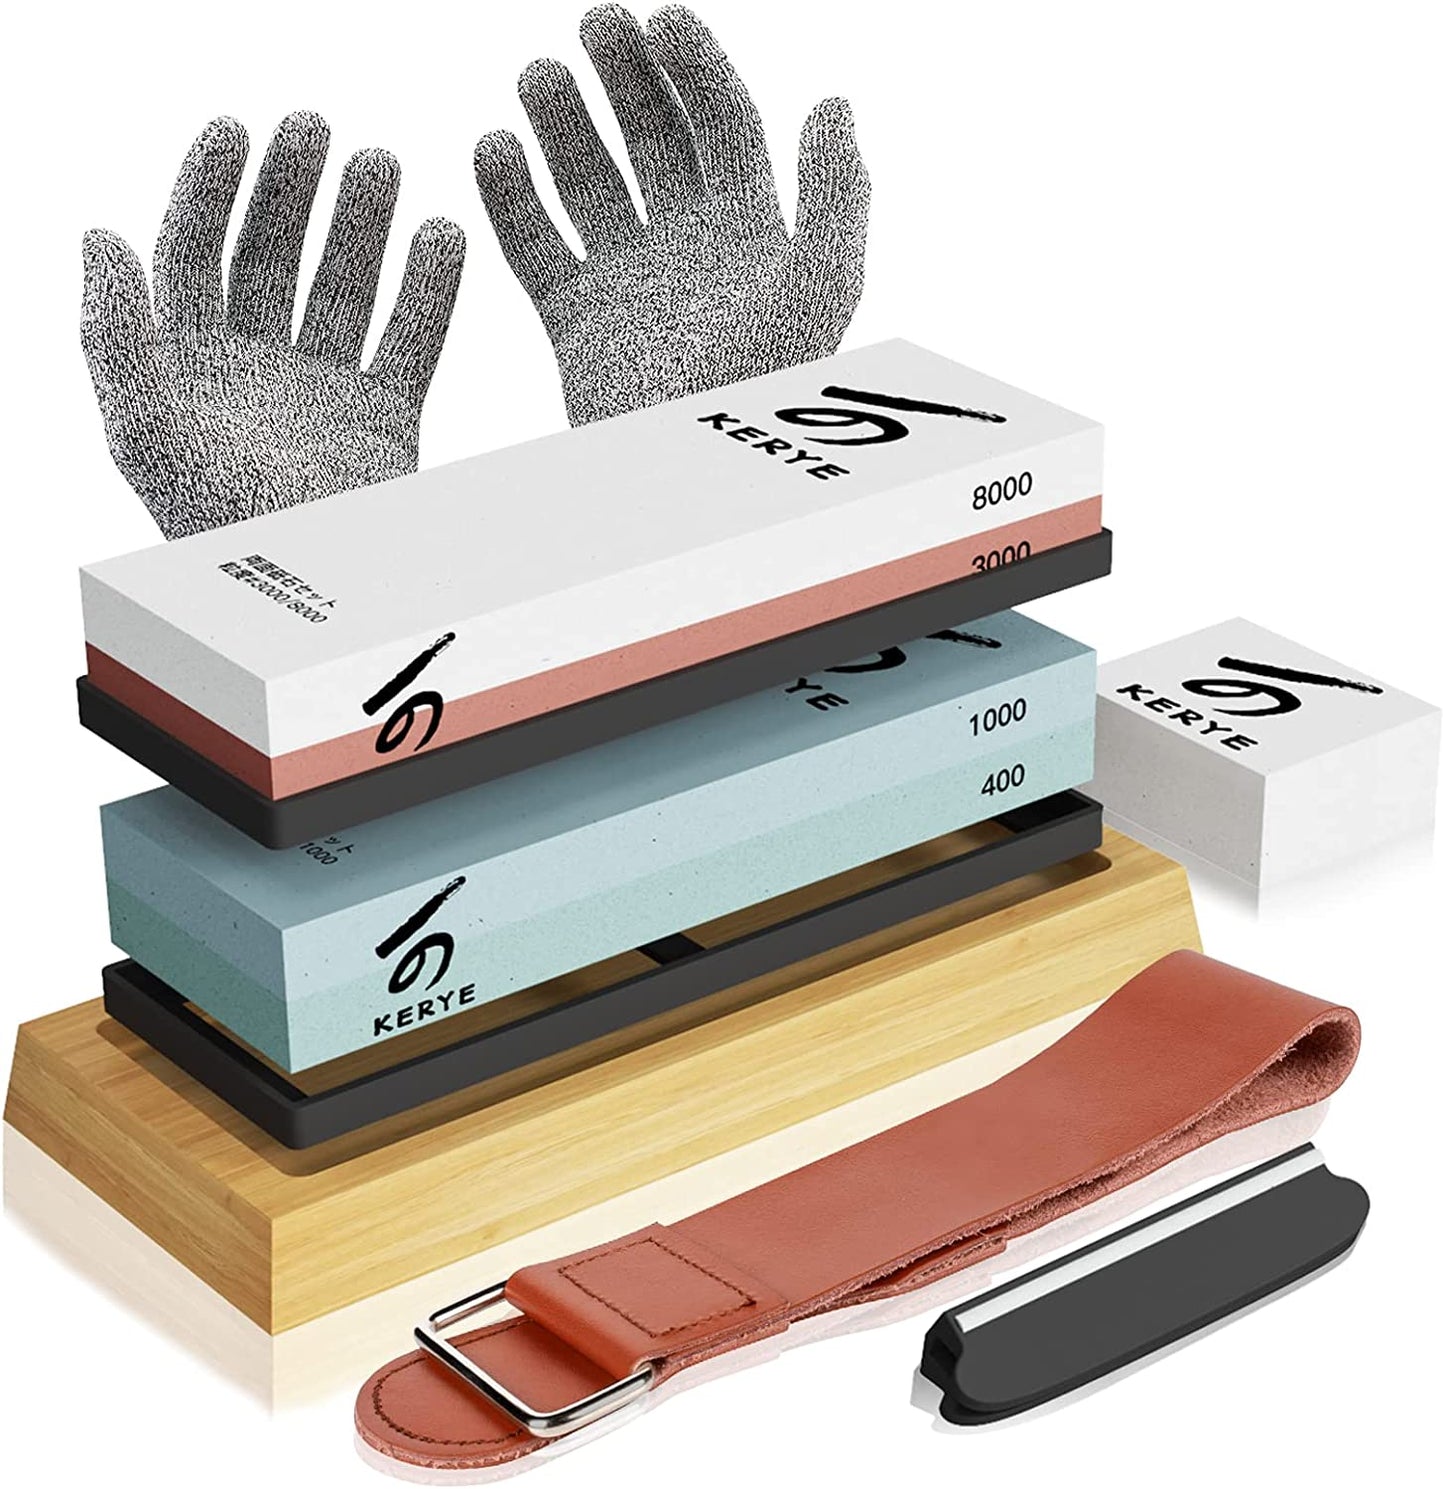 YeopAsda Knife Sharpening Stone Set - Premium 4 Side Grit 400/1000 3000/8000 Whetstone Sharpener Kit - Non-Slip Bamboo Base,Cut Resistant Gloves, Angl